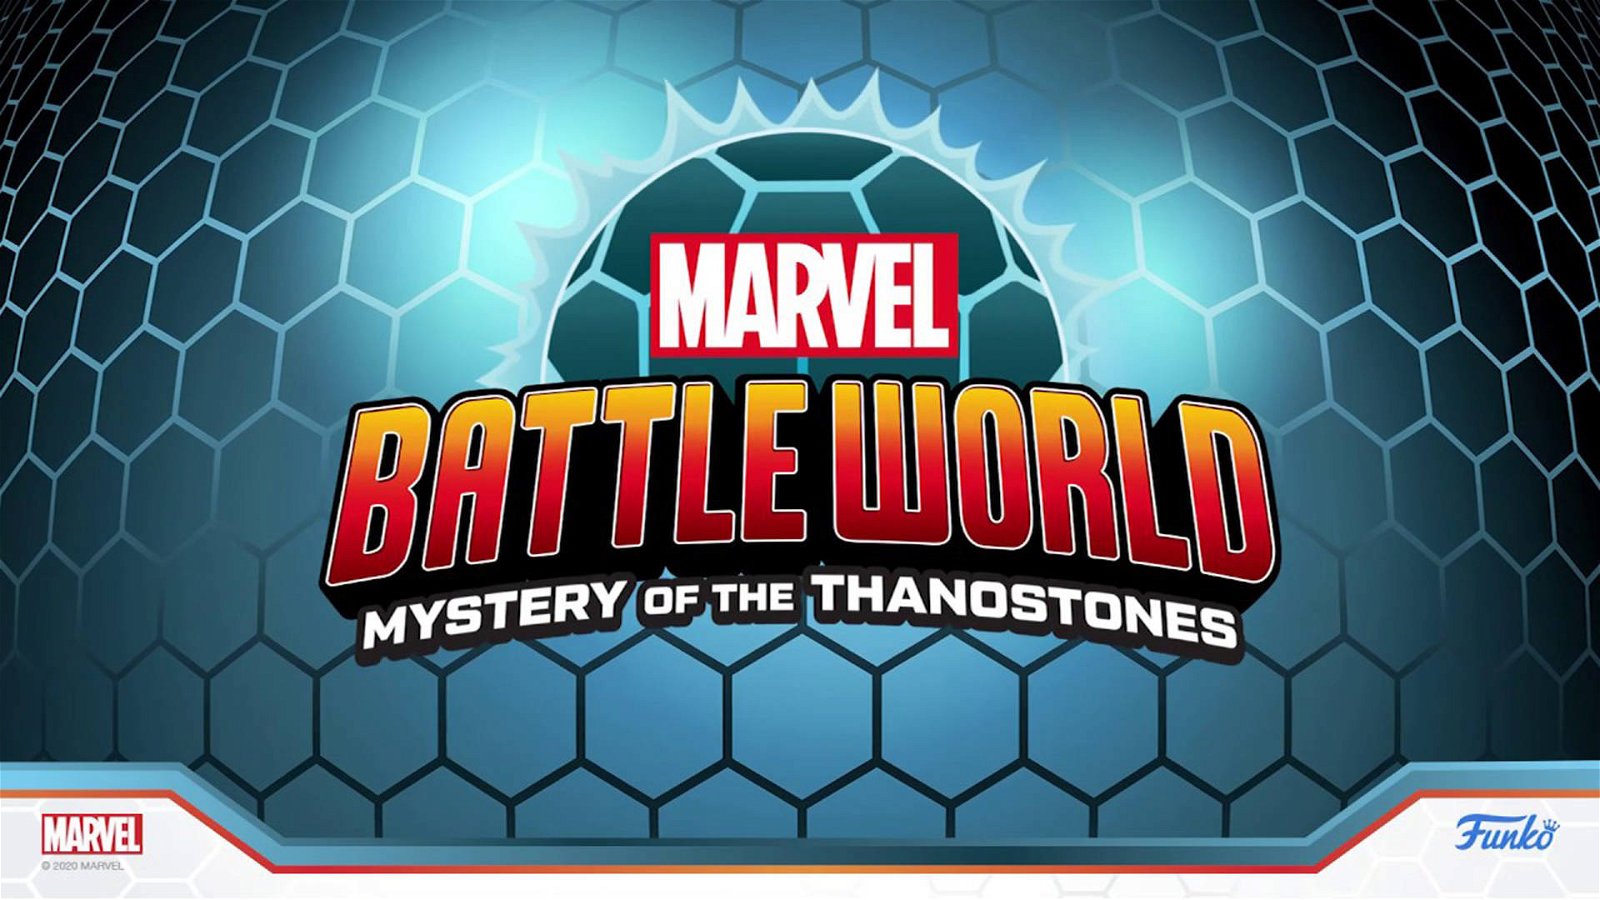 Immagine di Funko Marvel Battleworld: in arrivo un nuovo micro-gioco da tavolo